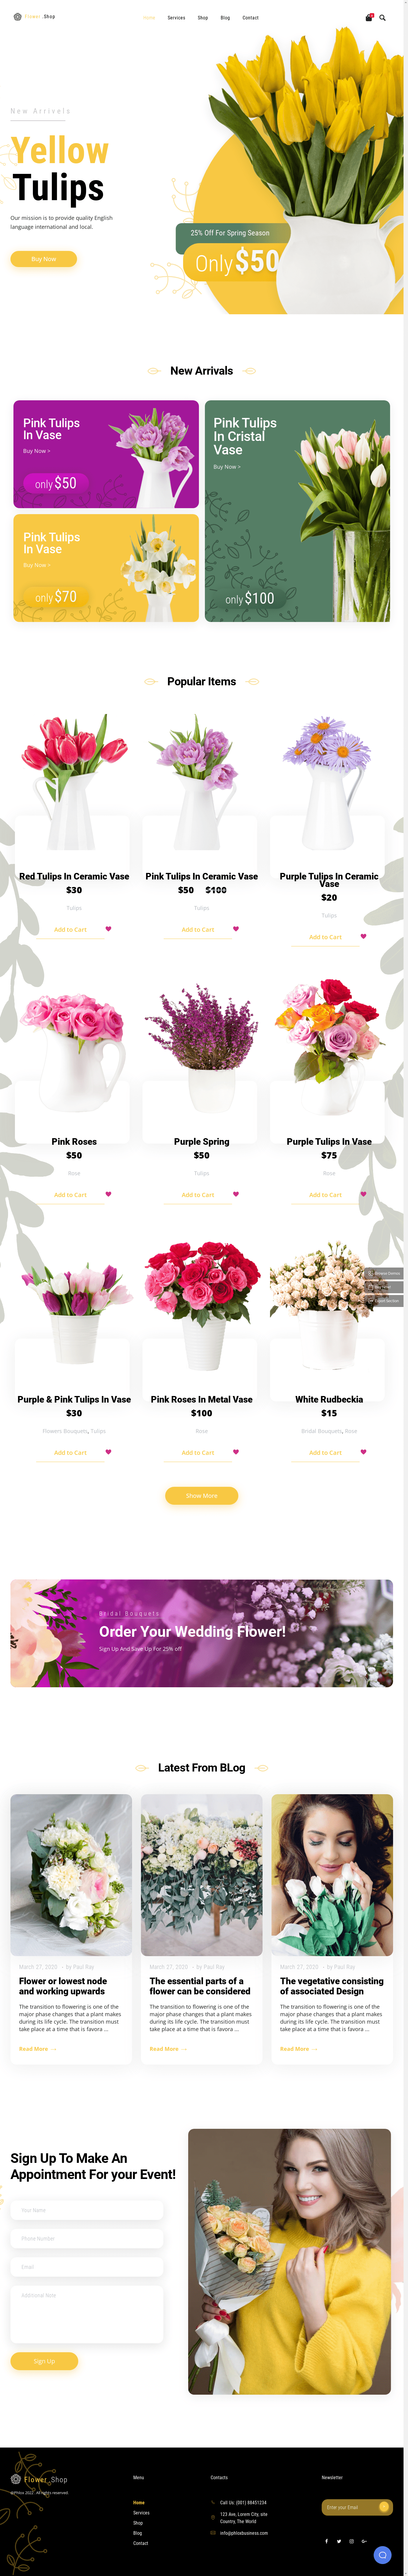 phlox flower shop template